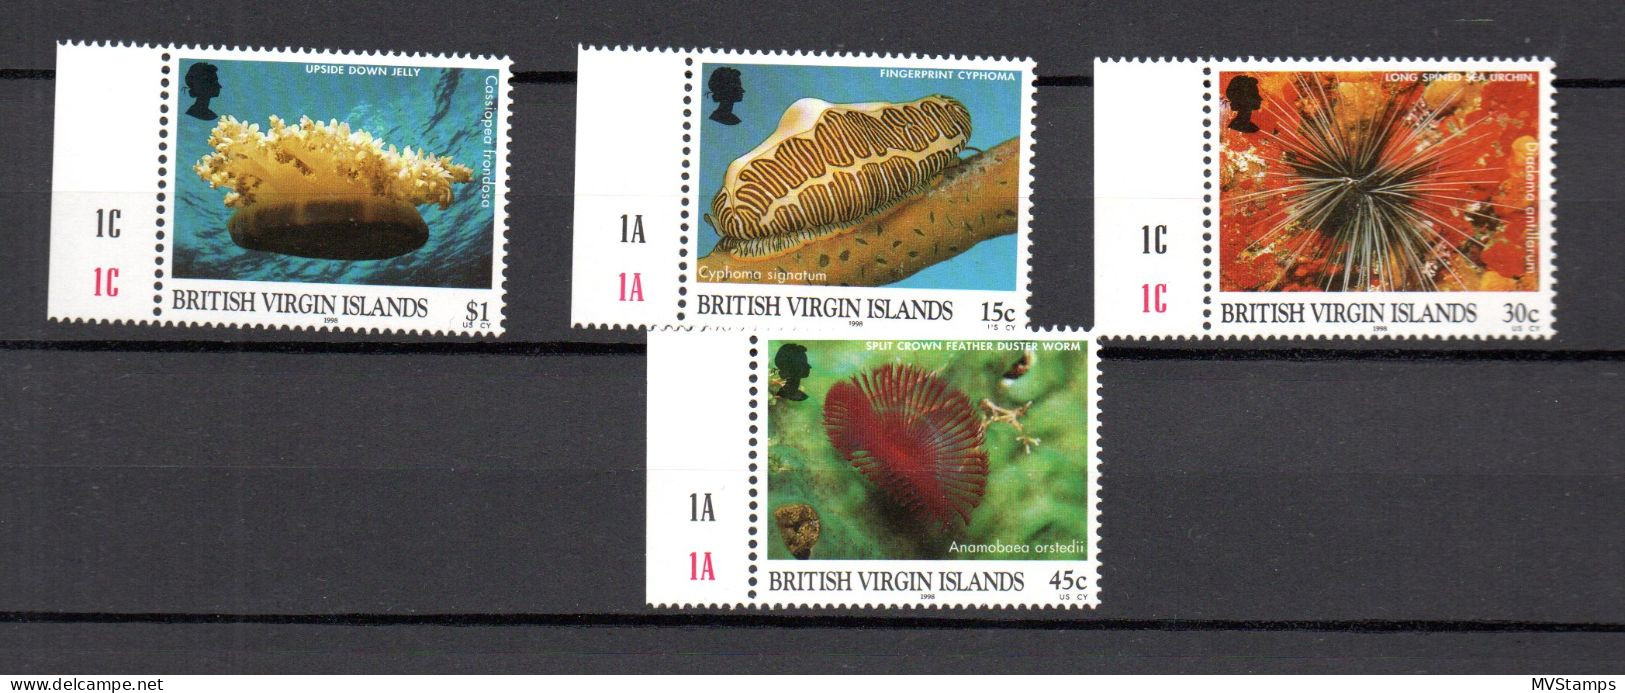 Virgin Islands 1998 Set Sealife/Fish/Meerestiere Stamps (Michel 932/35) MNH - British Virgin Islands